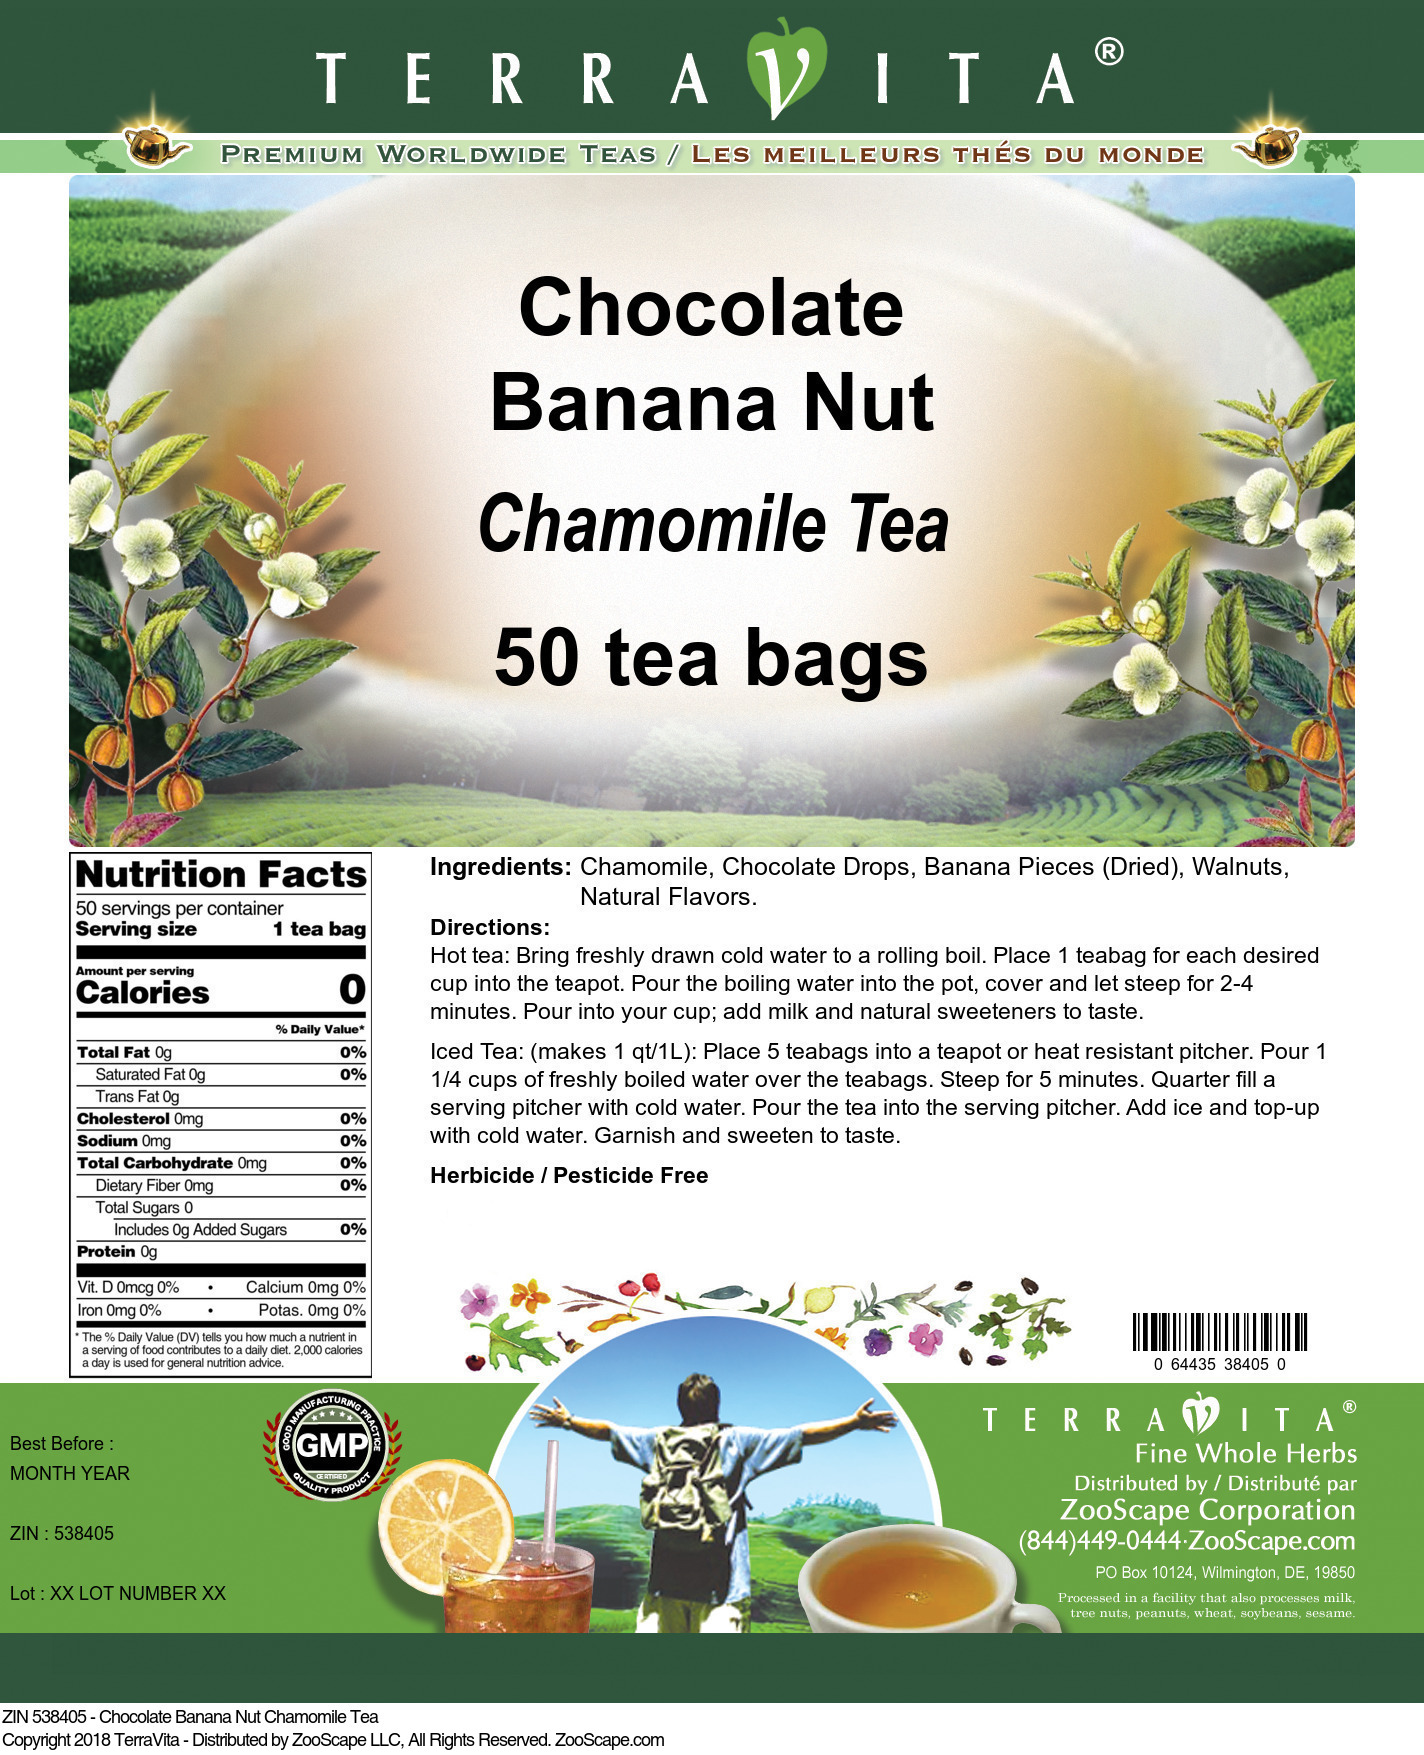 Chocolate Banana Nut Chamomile Tea - Label